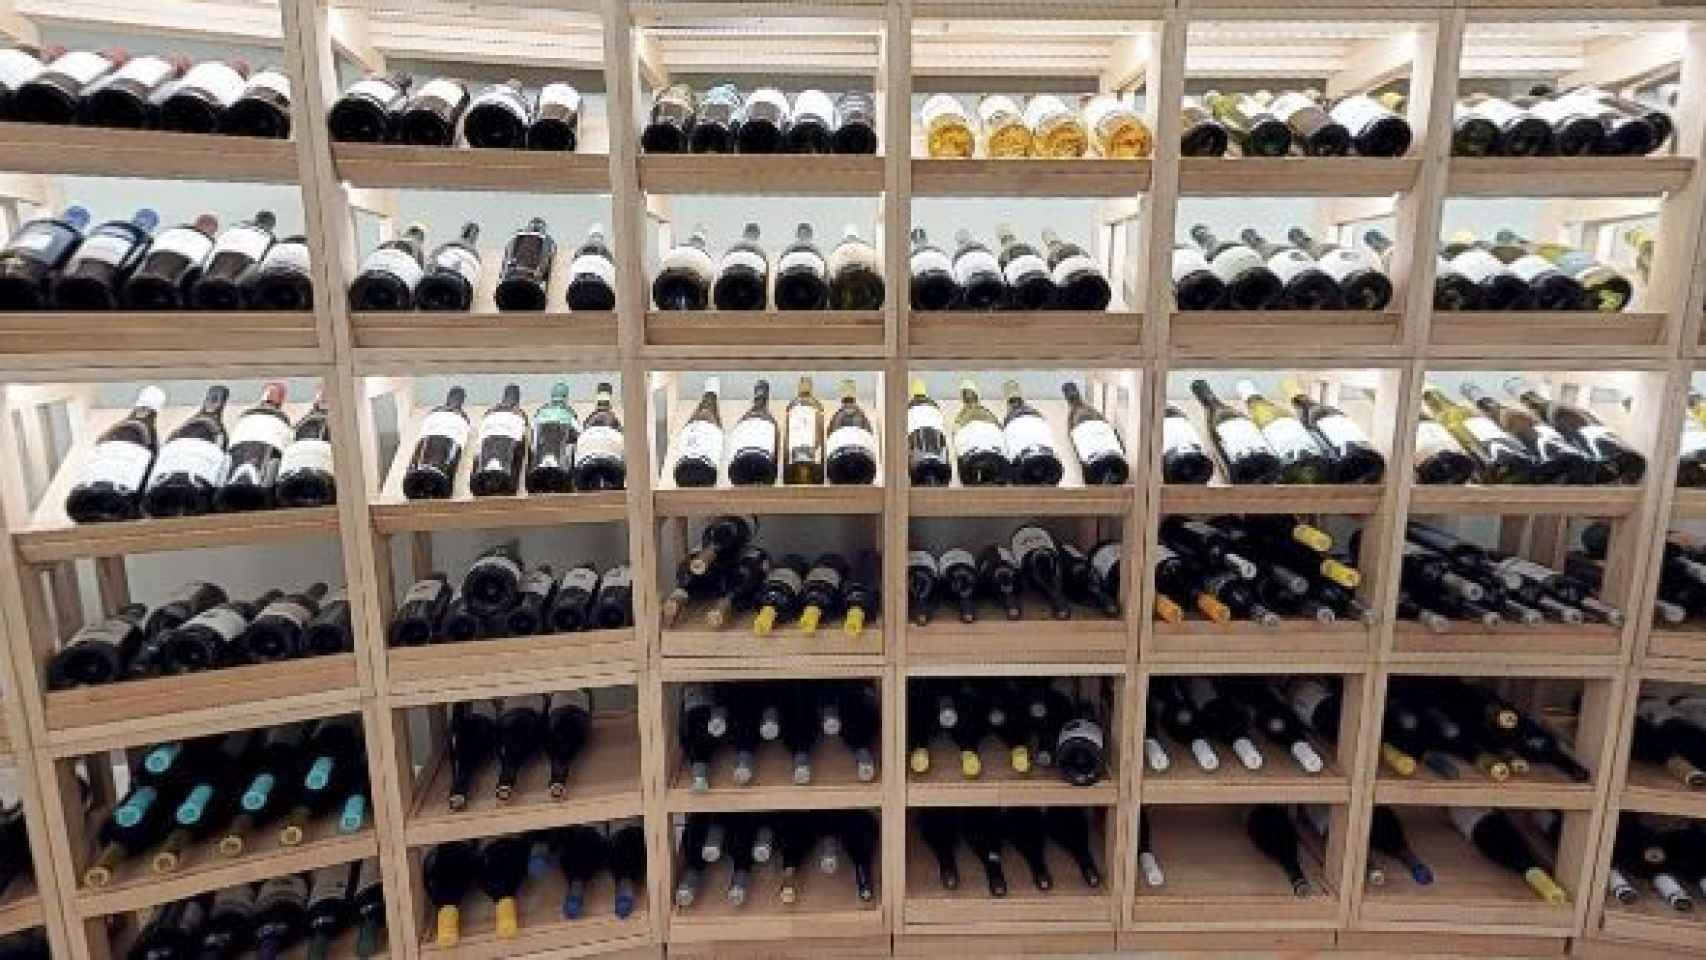 Roban 152 exclusivas botellas de vino valoradas en 150.000€ del restaurante Coque de Mario Sandoval